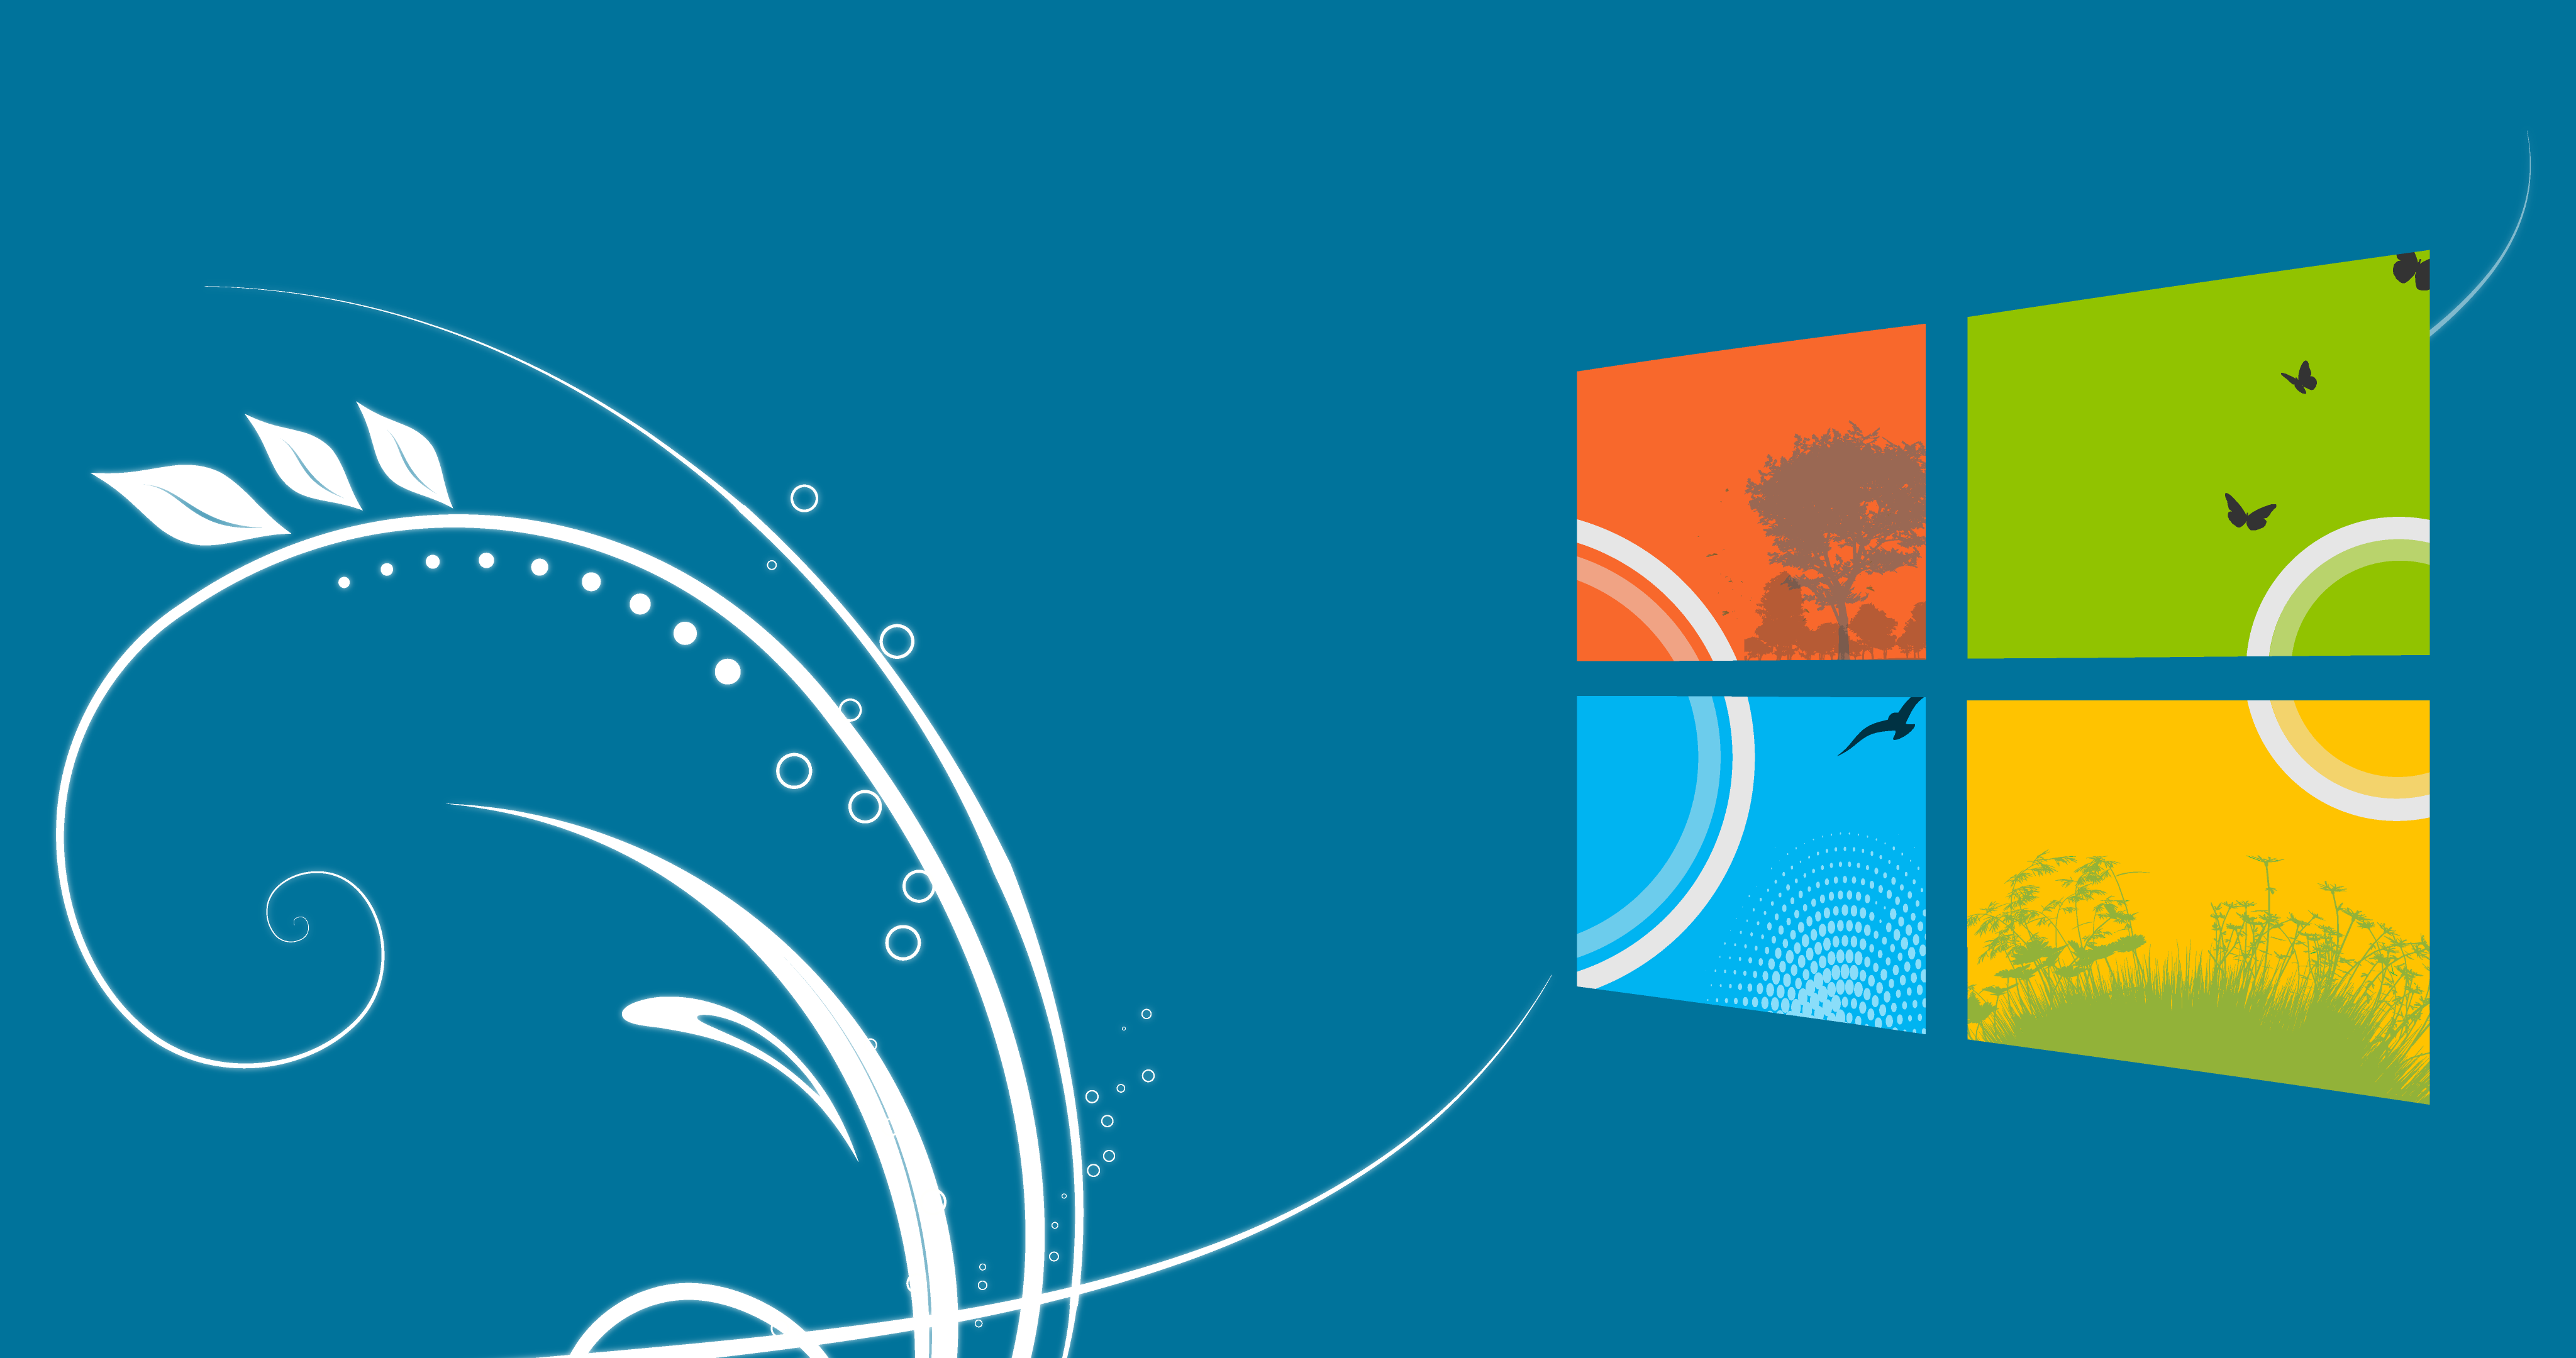 Hình nền Windows 10 phong cách Seven nâng cấp màn hình của bạn lên một tầm cao mới với độ phân giải 4K và màu sắc sắc nét. Với hình ảnh đẹp nhất, bạn sẽ cảm thấy thoải mái hơn và truyền tải được phong cách cá nhân của mình. Hãy tìm kiếm hình nền phù hợp với mình và trang trí cho màn hình của bạn để tăng sự tập trung và thể hiện phong cách!!